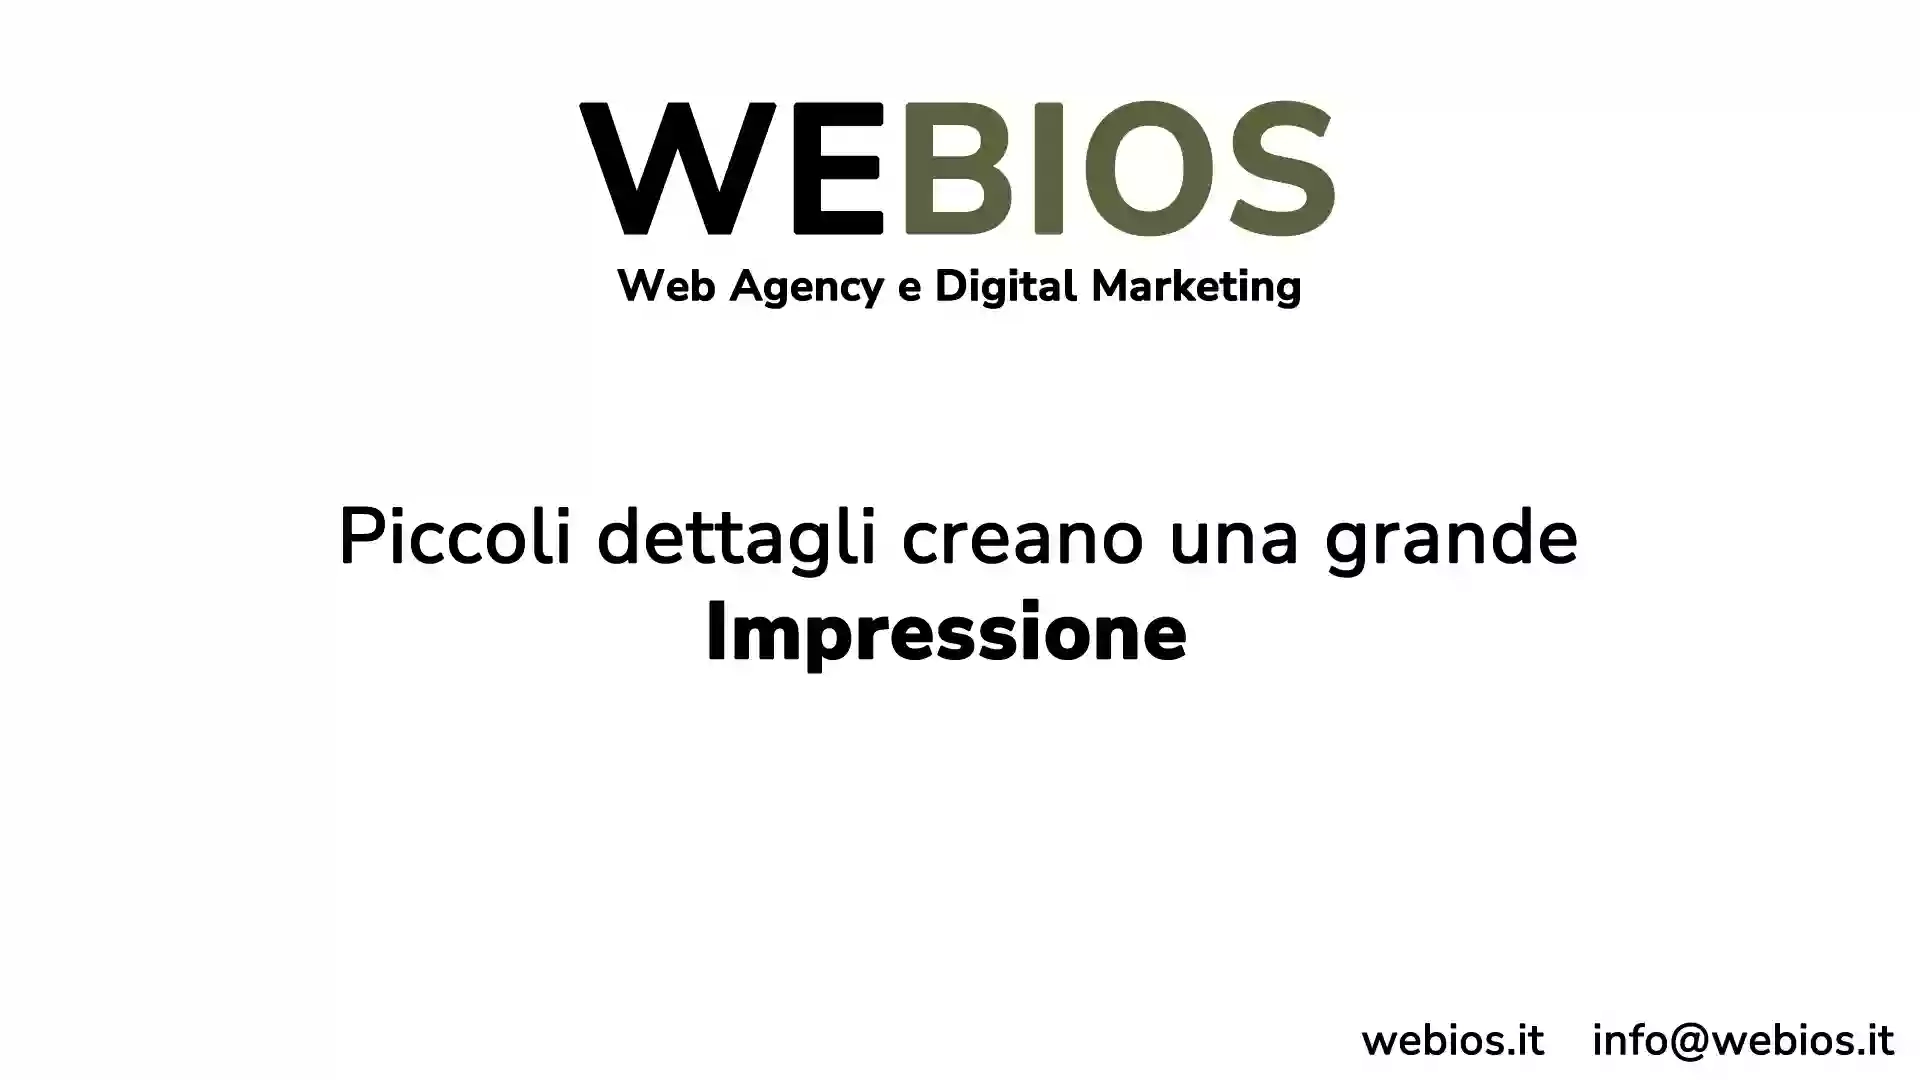 WeBios Web Agency